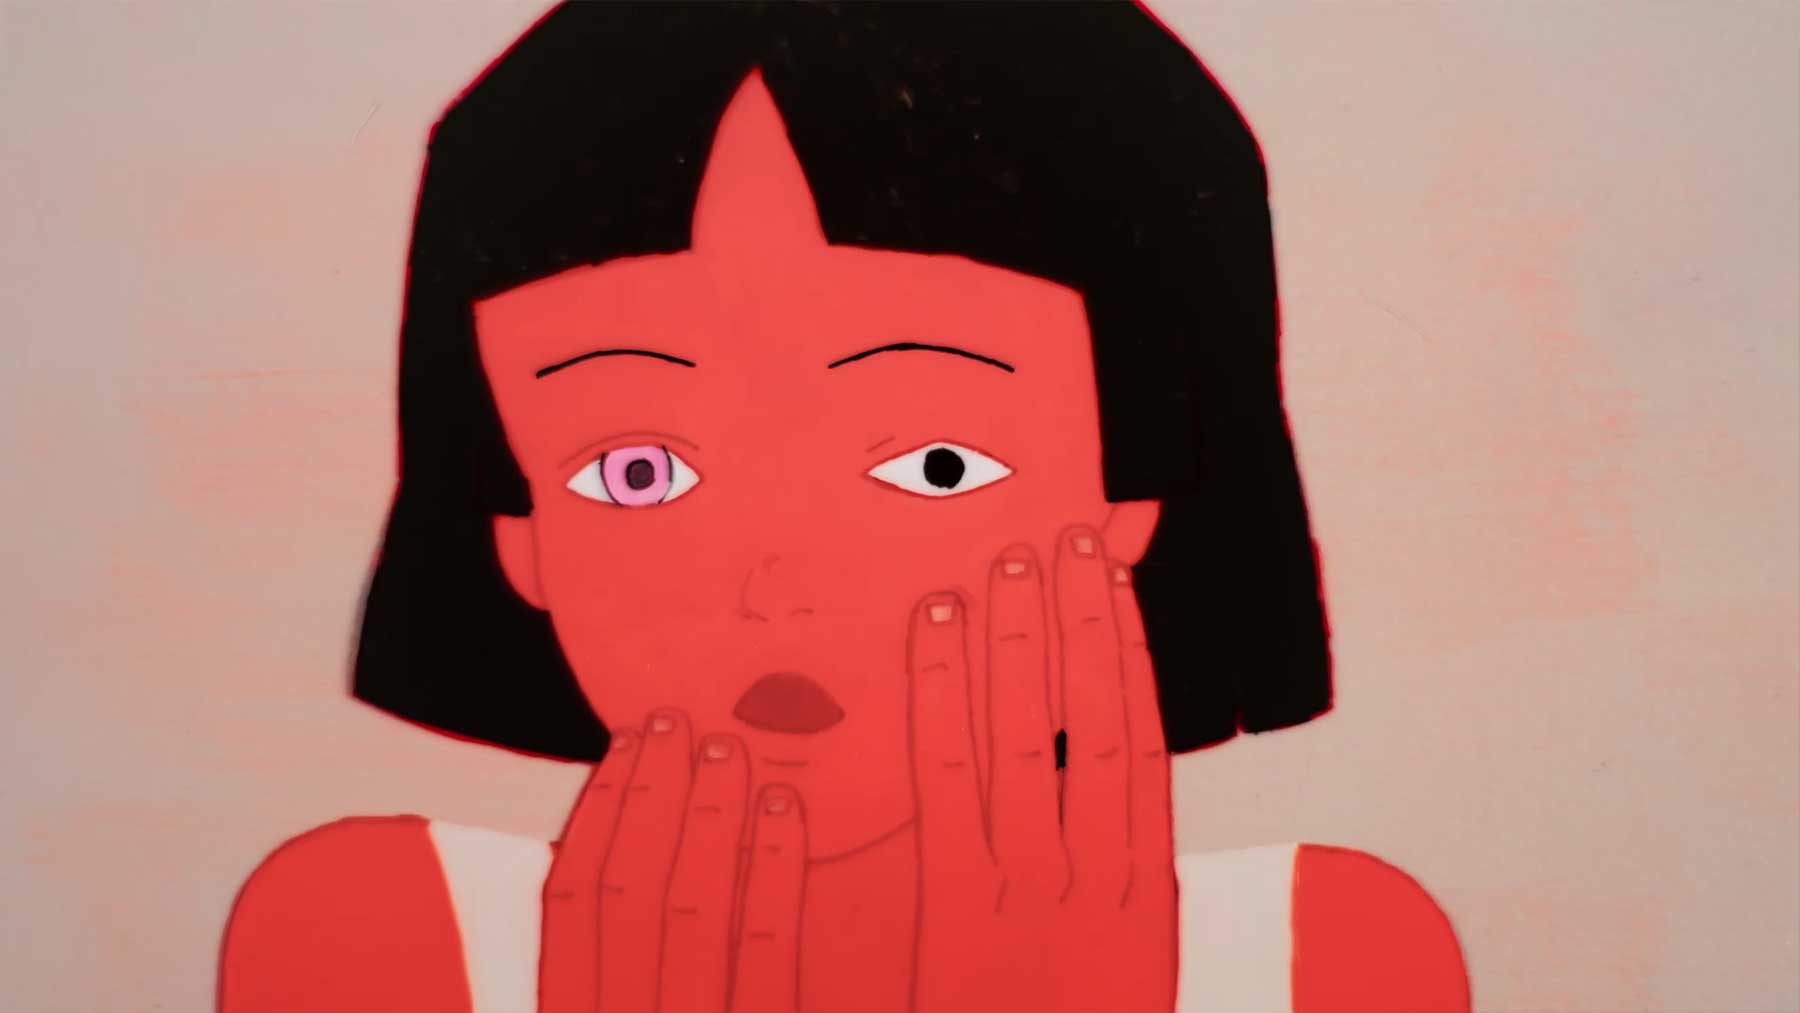 Animation über mentale Gesundheit und Selbstverletzung Je-me-gratte-self-scratch-kurzfilm 